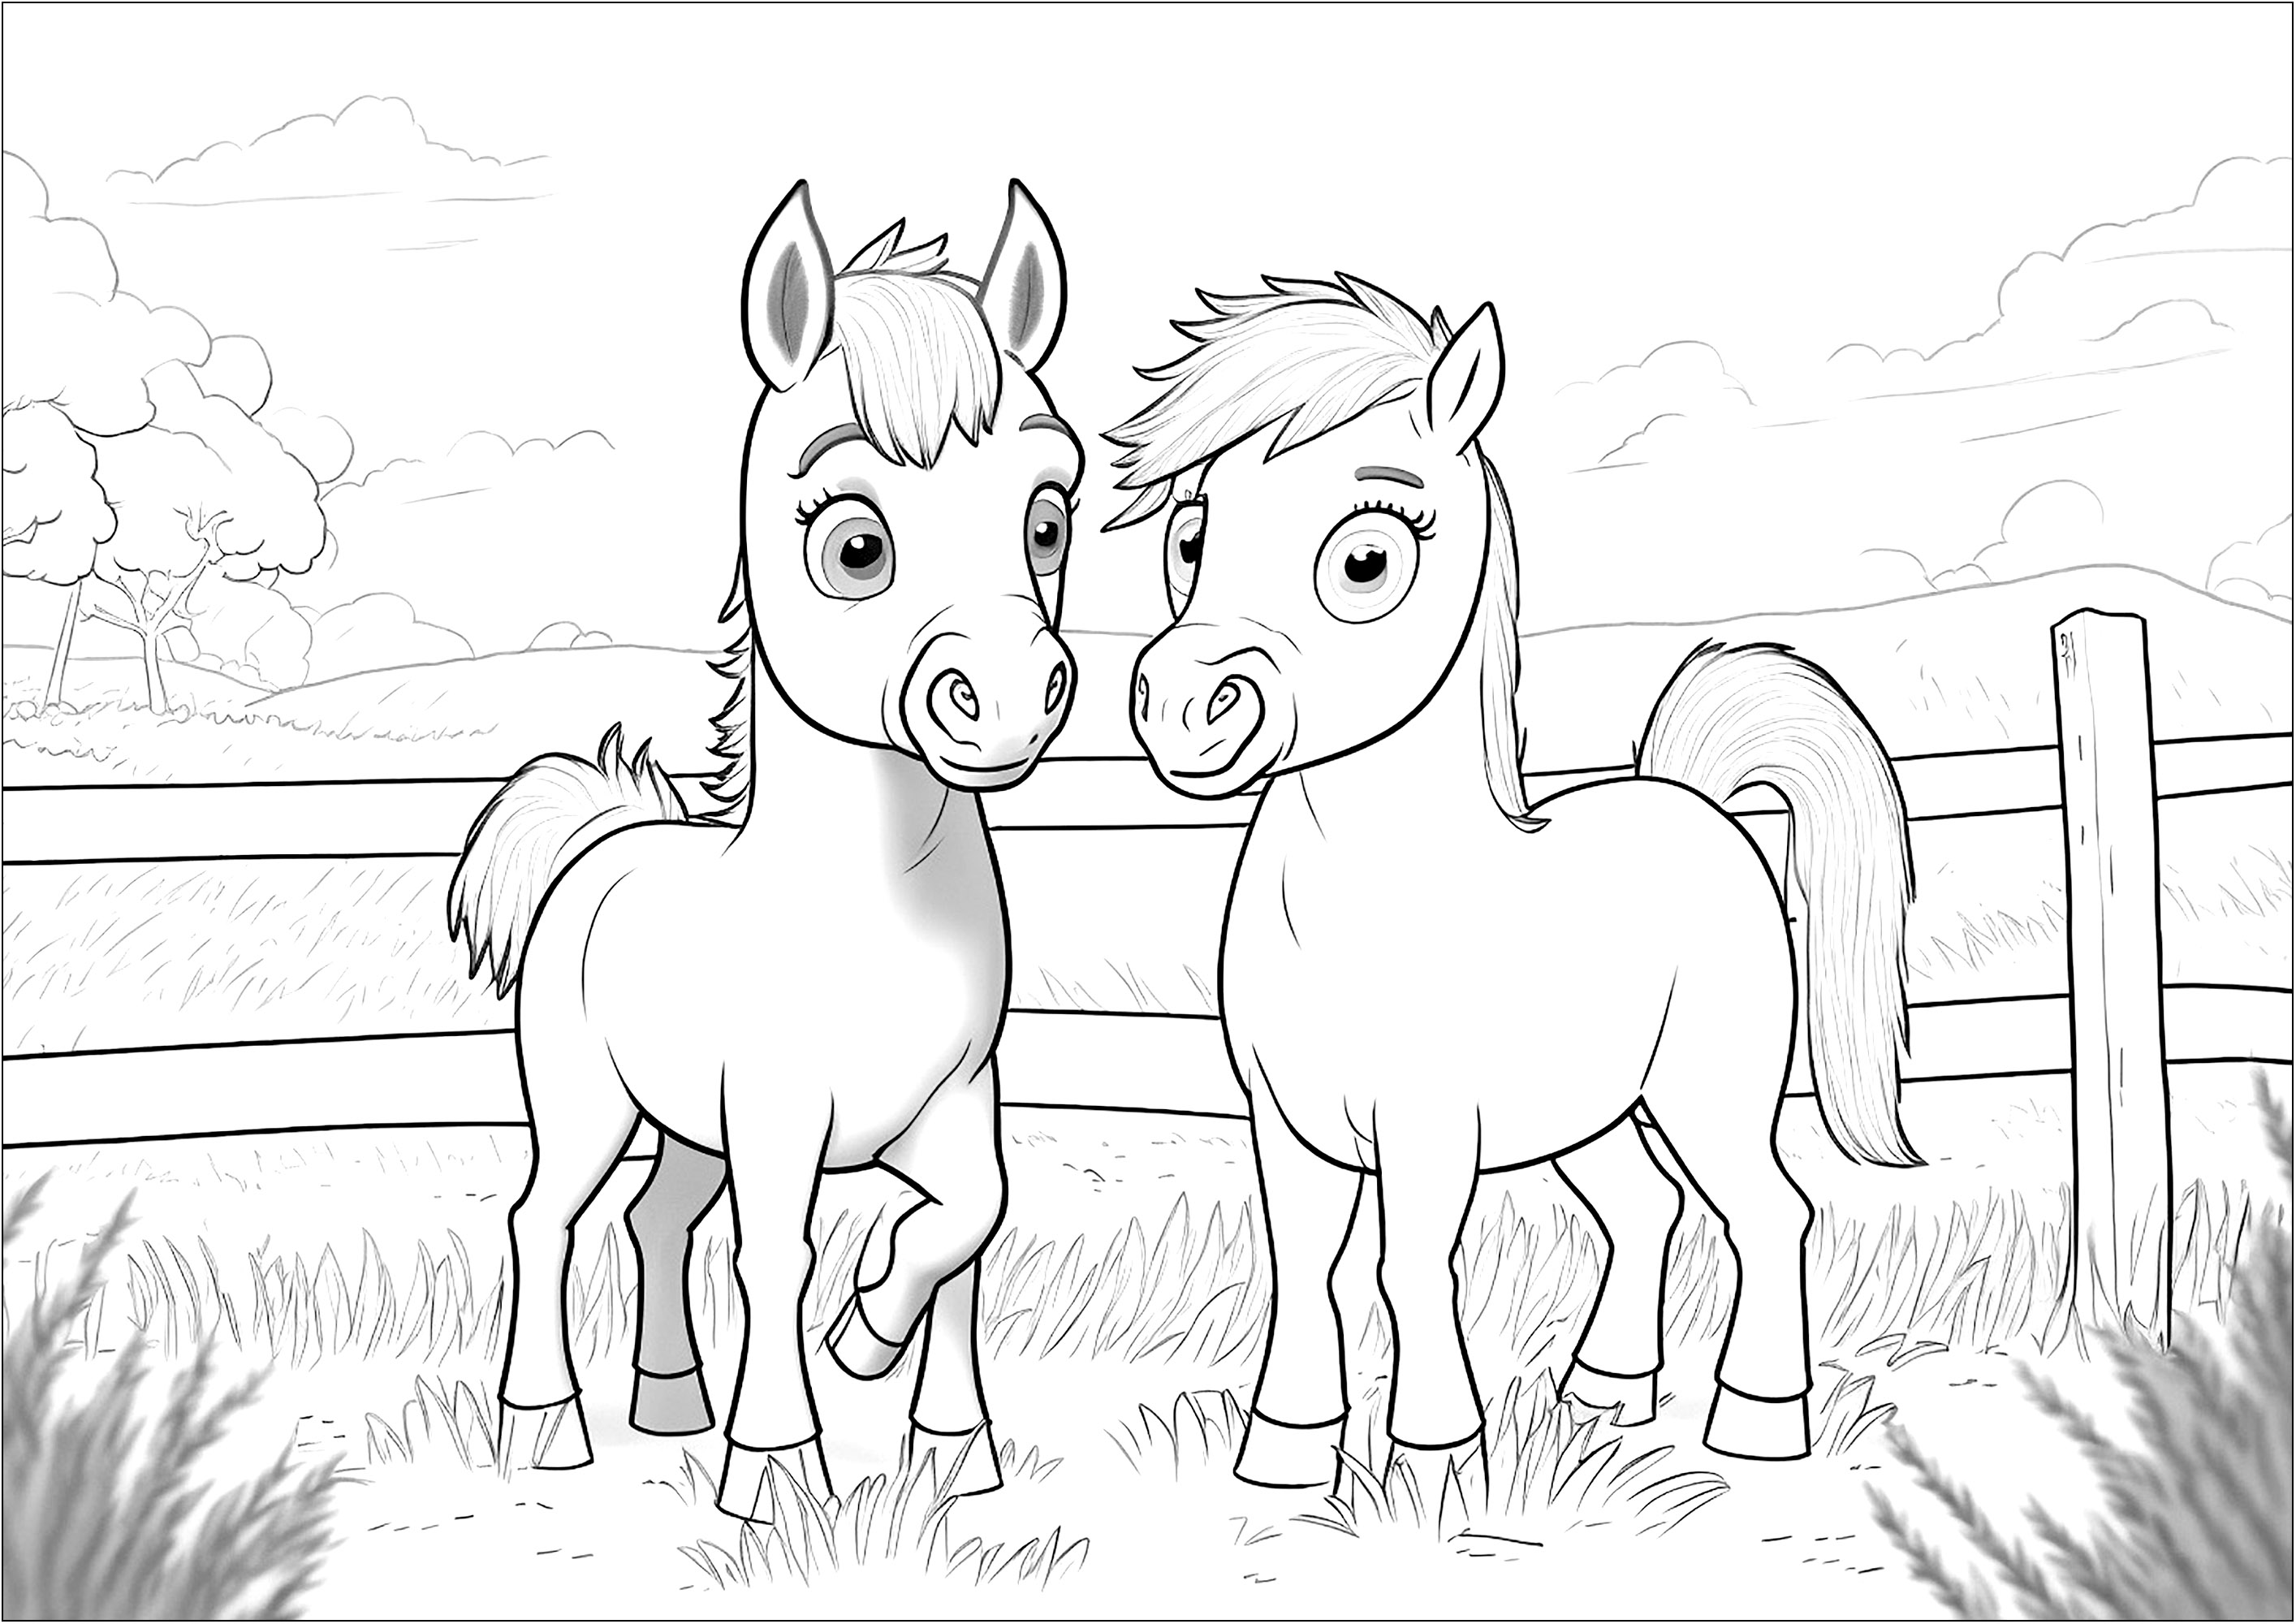 Deux jolis chevaux à colorier. Ce coloriage est parfait pour les enfants qui aiment les chevaux et le monde de l'équitation. Il comporte deux chevaux dans leur enclos, avec un joli arrière plan composé d'arbres, plaines et nuages.